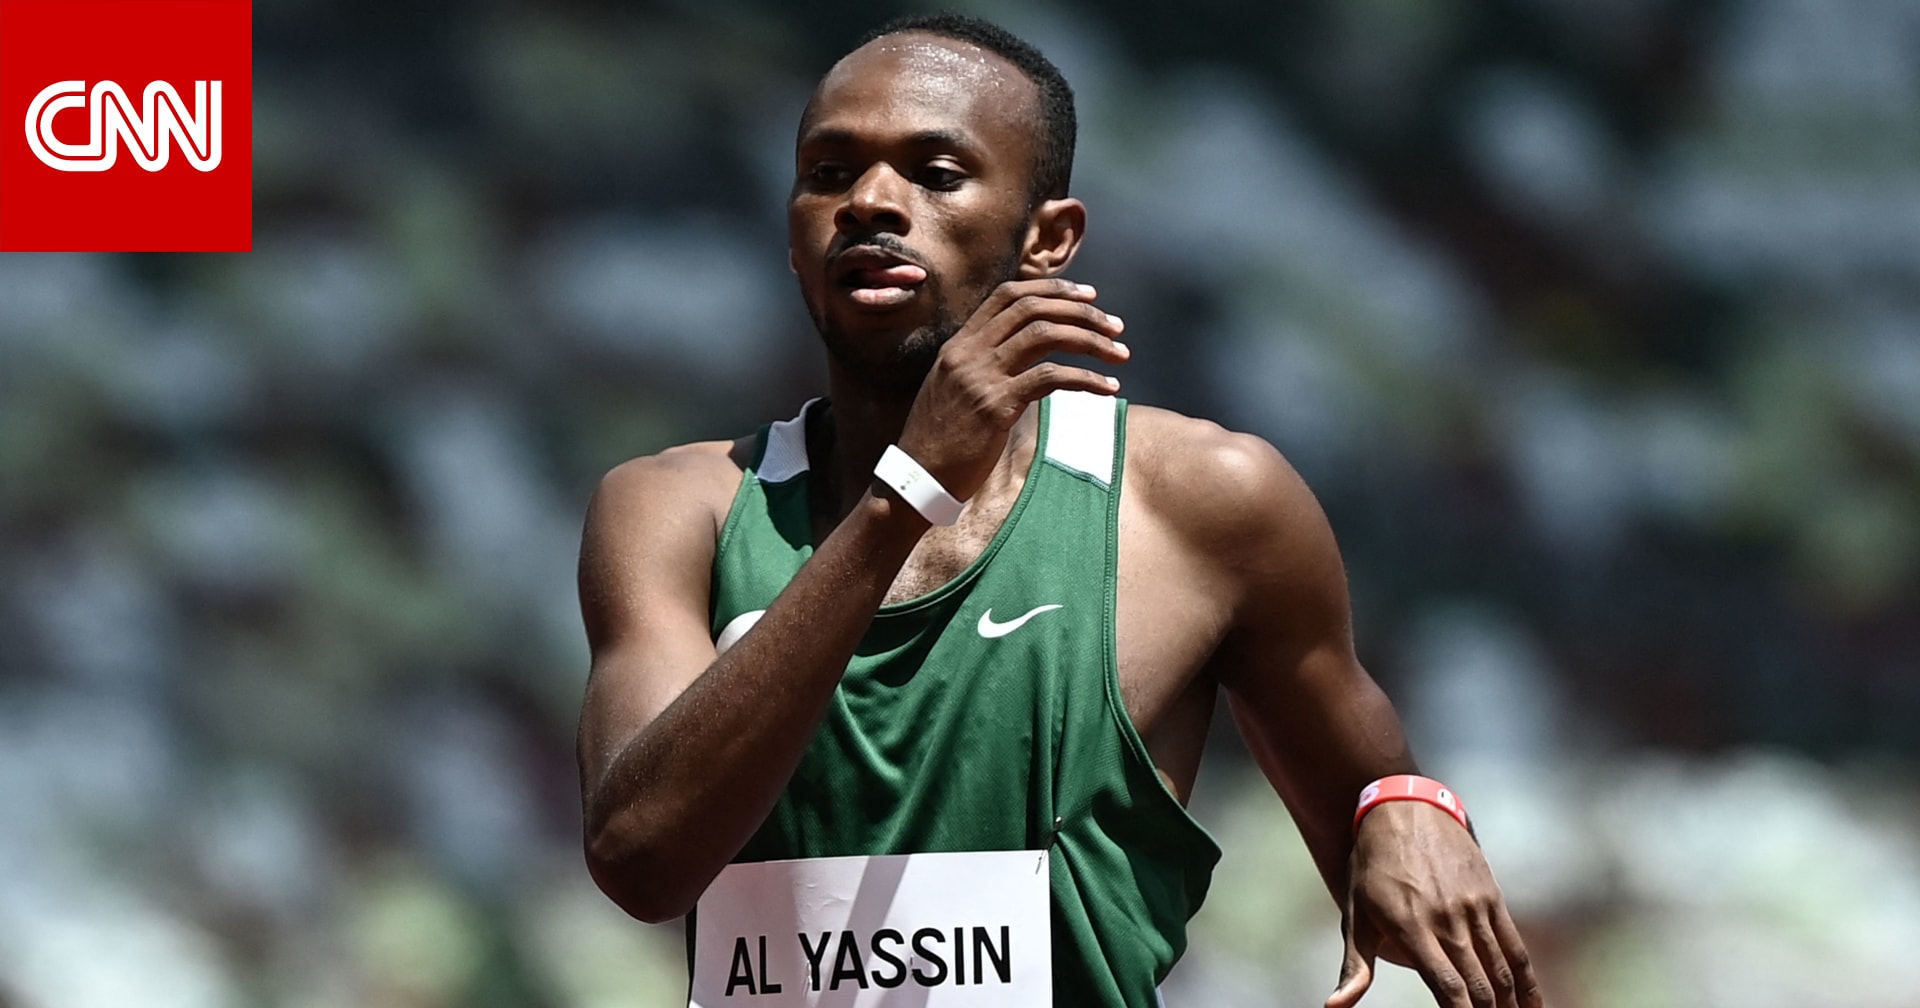 السعودية.. ردود فعل واسعة على تأهل العداء مازن الياسين لنصف نهائي 400 متر